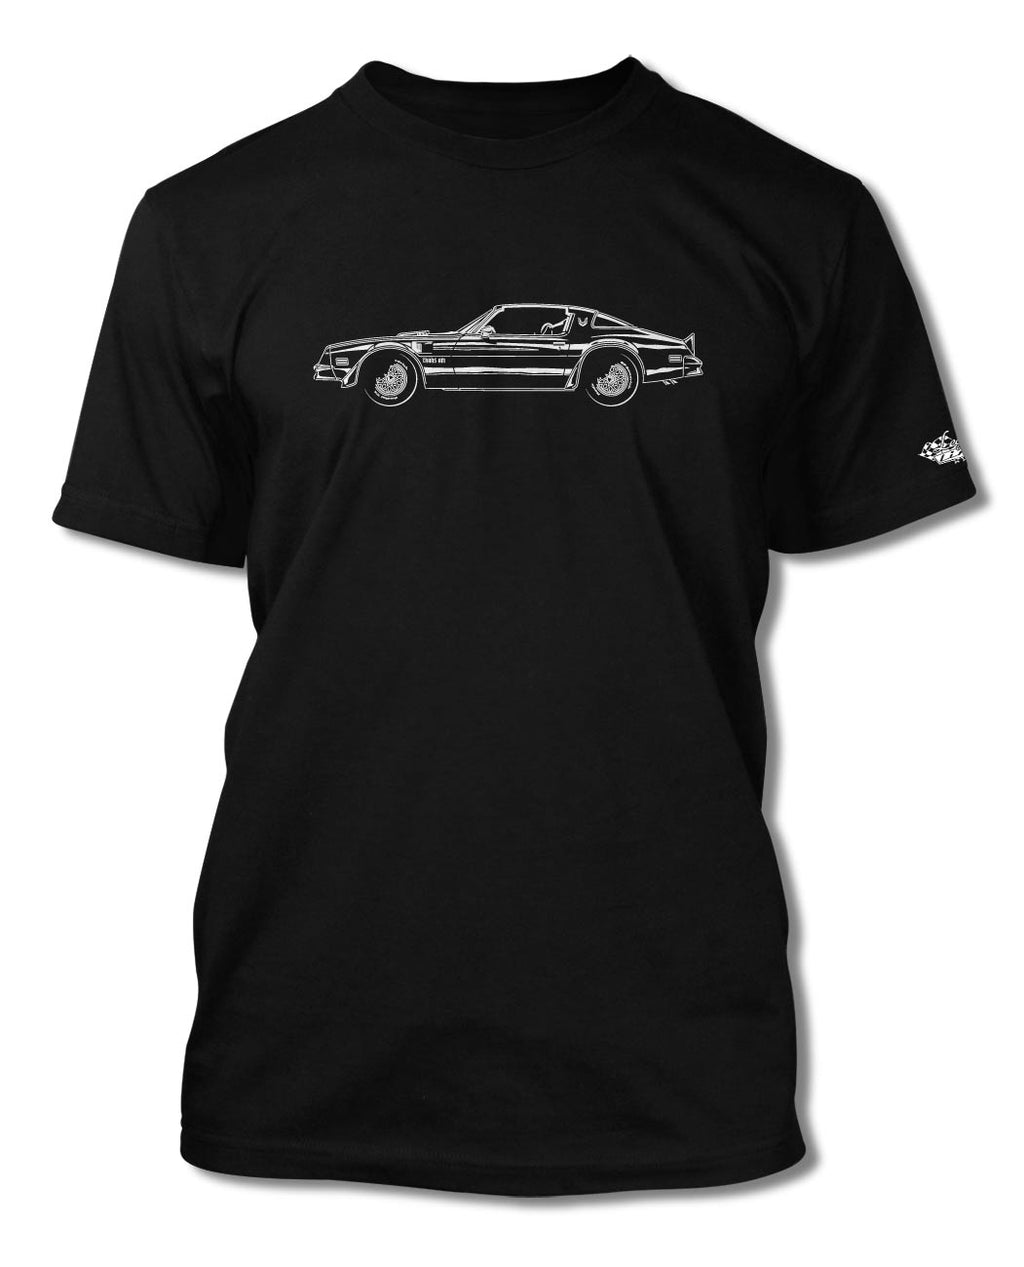 1977 Pontiac Trans Am Coupe T-Shirt - Men - Side View